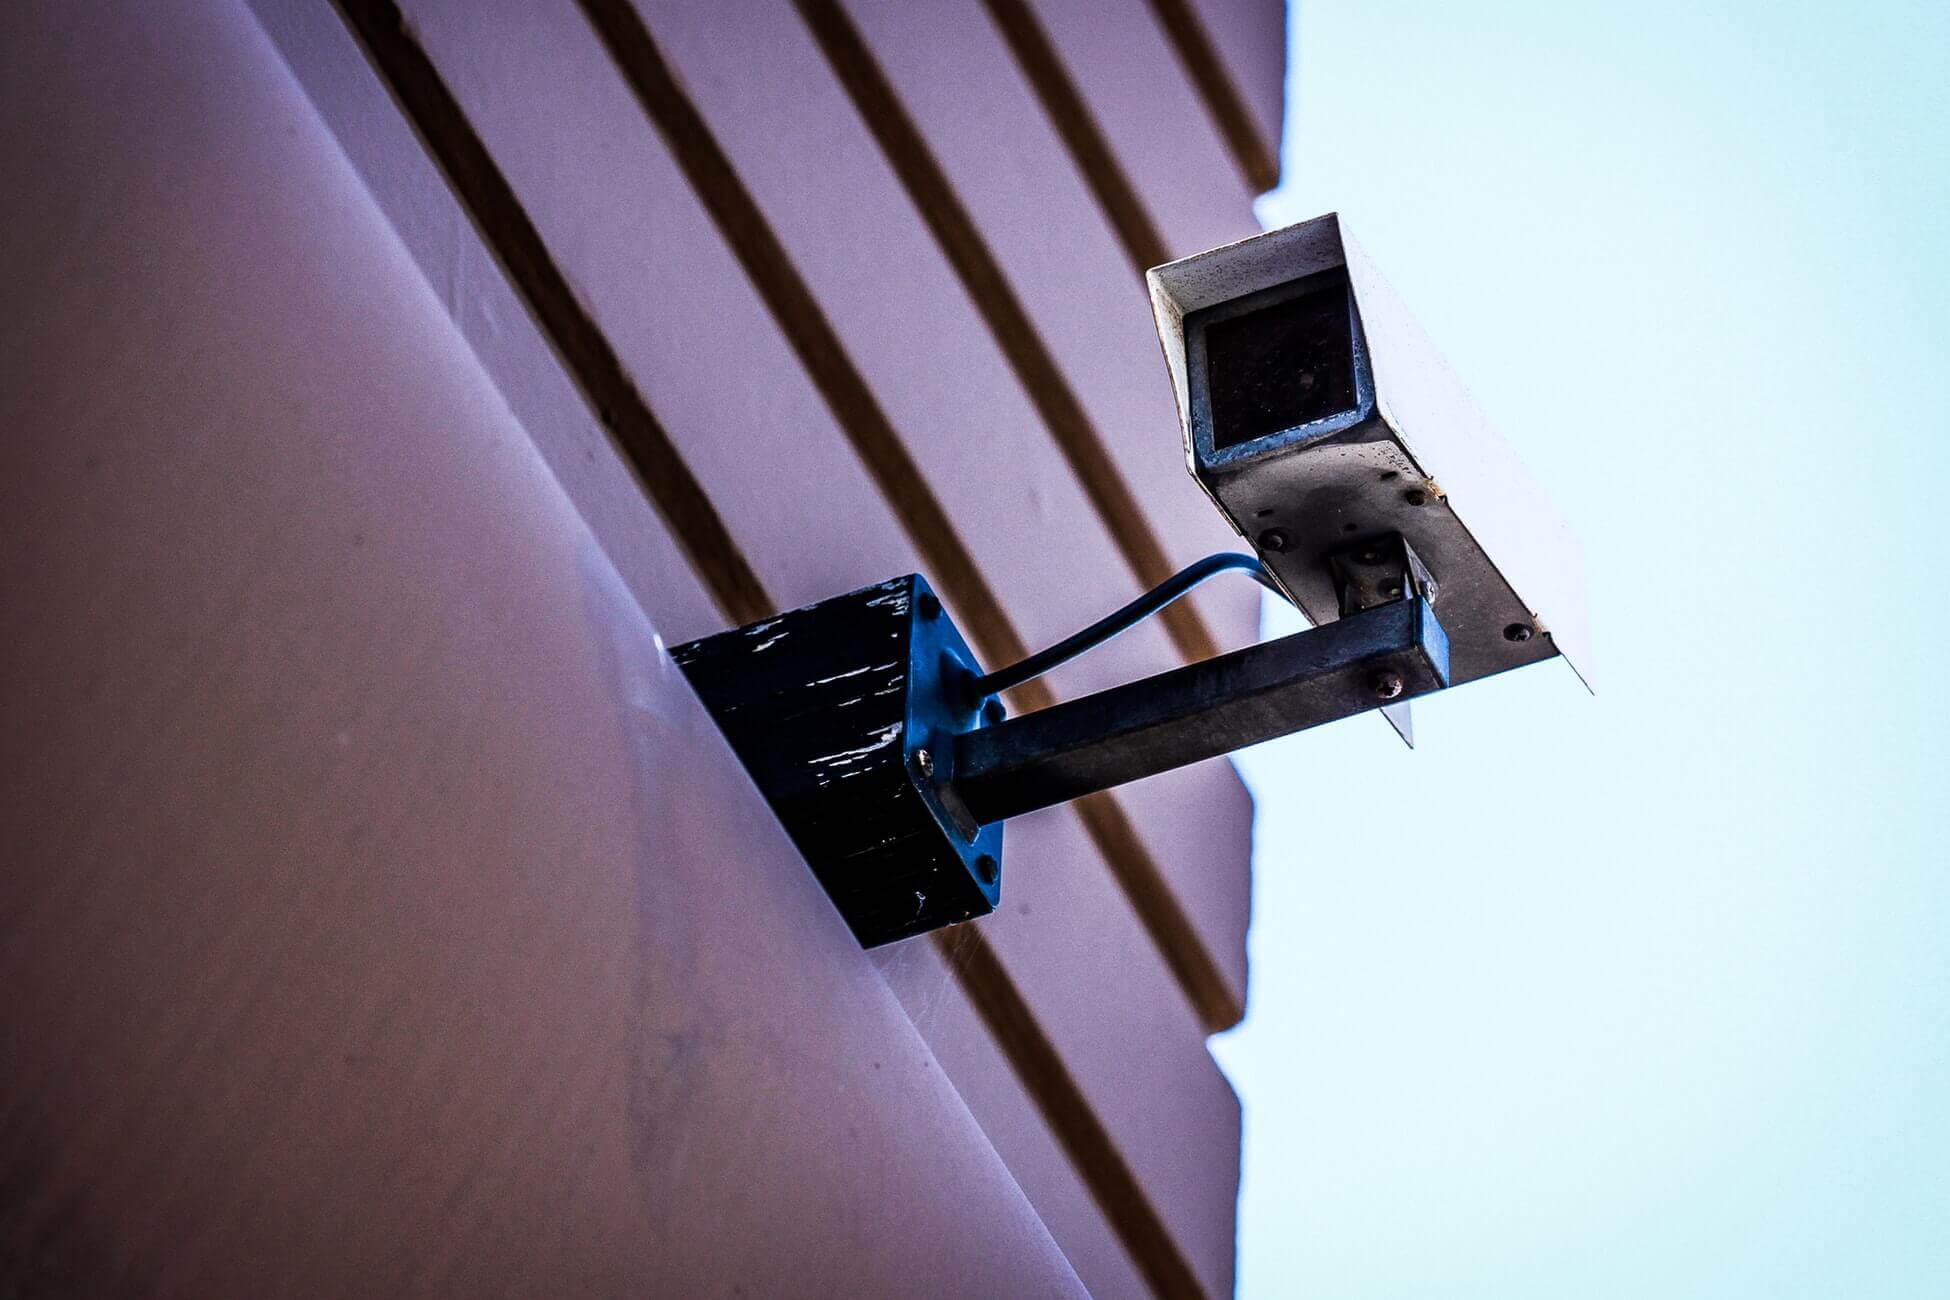 системы видеонаблюдения, чтобы обеспечить безопасность дома и на работе